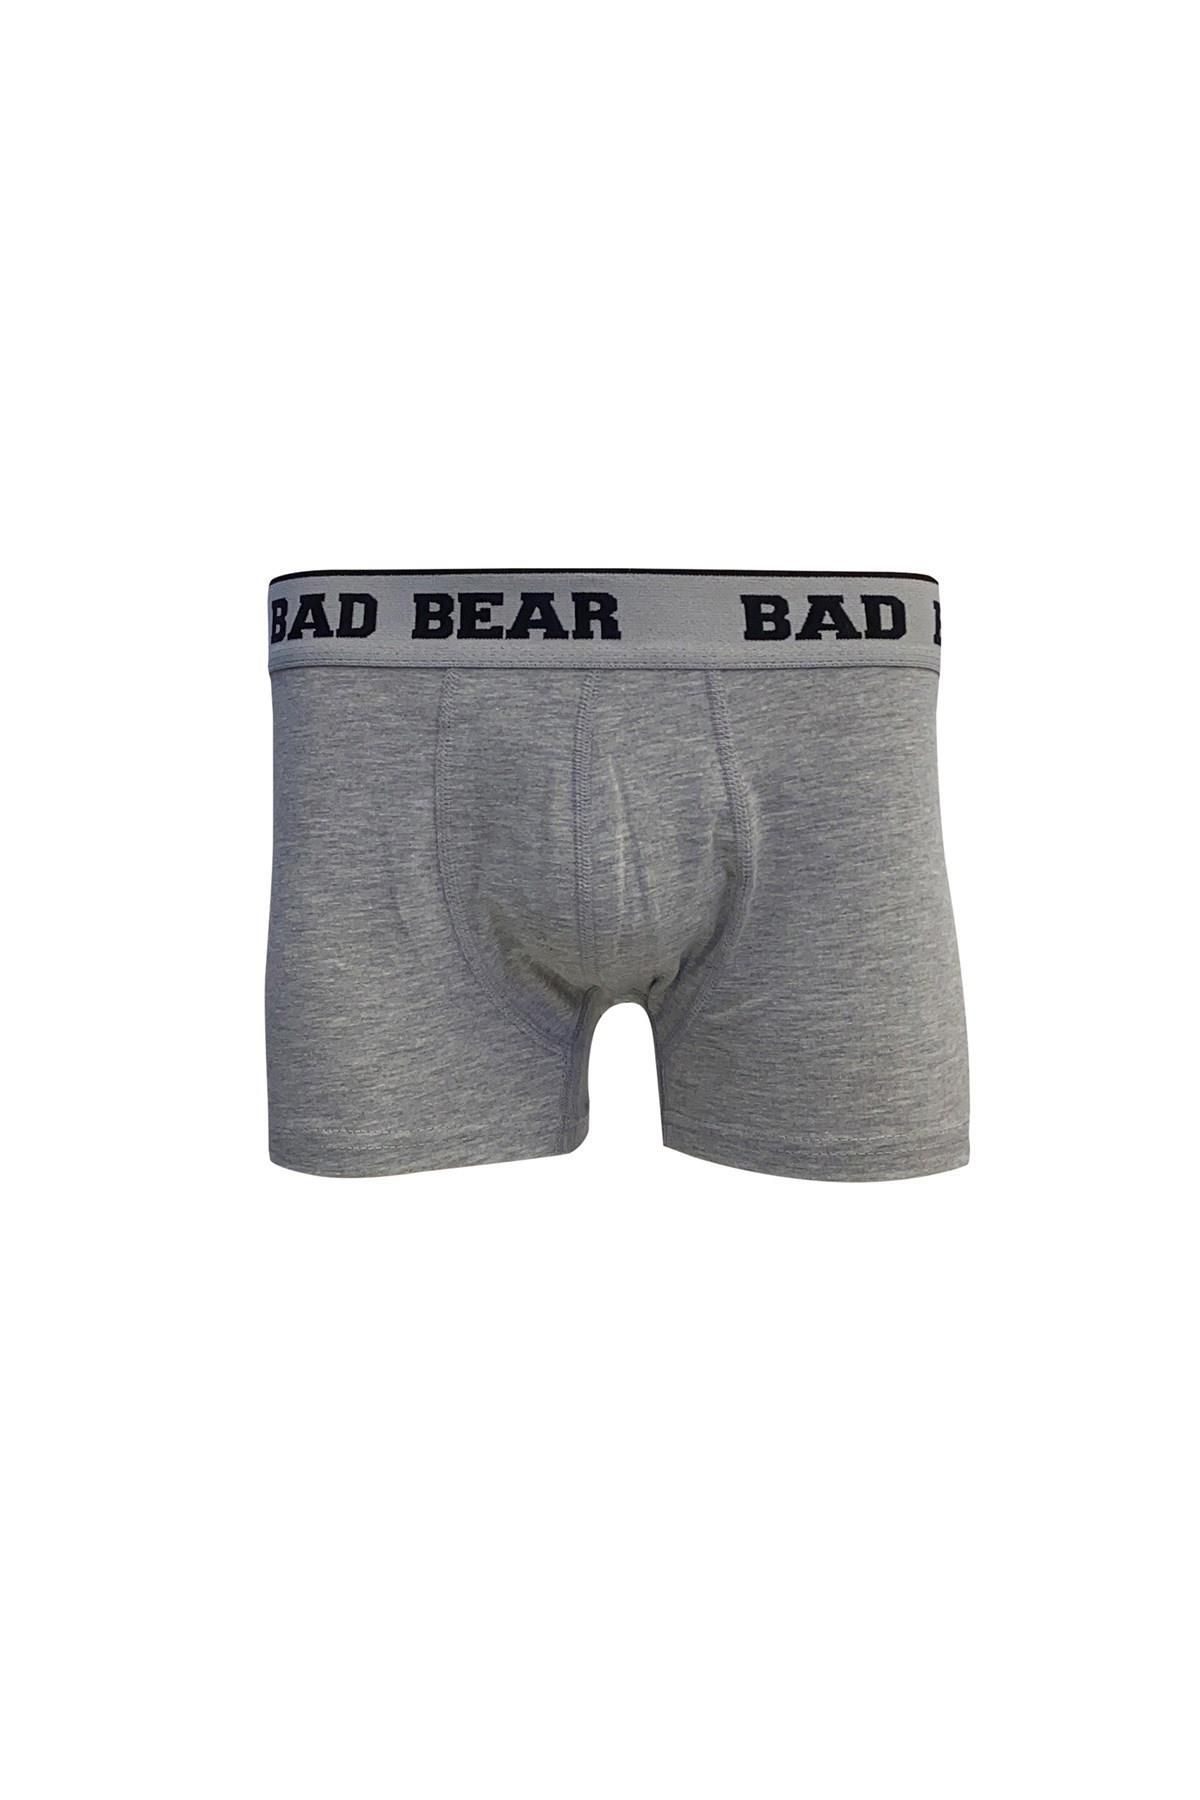 Bad Bear 21.01.03.002-c19 Basic Erkek Boxer